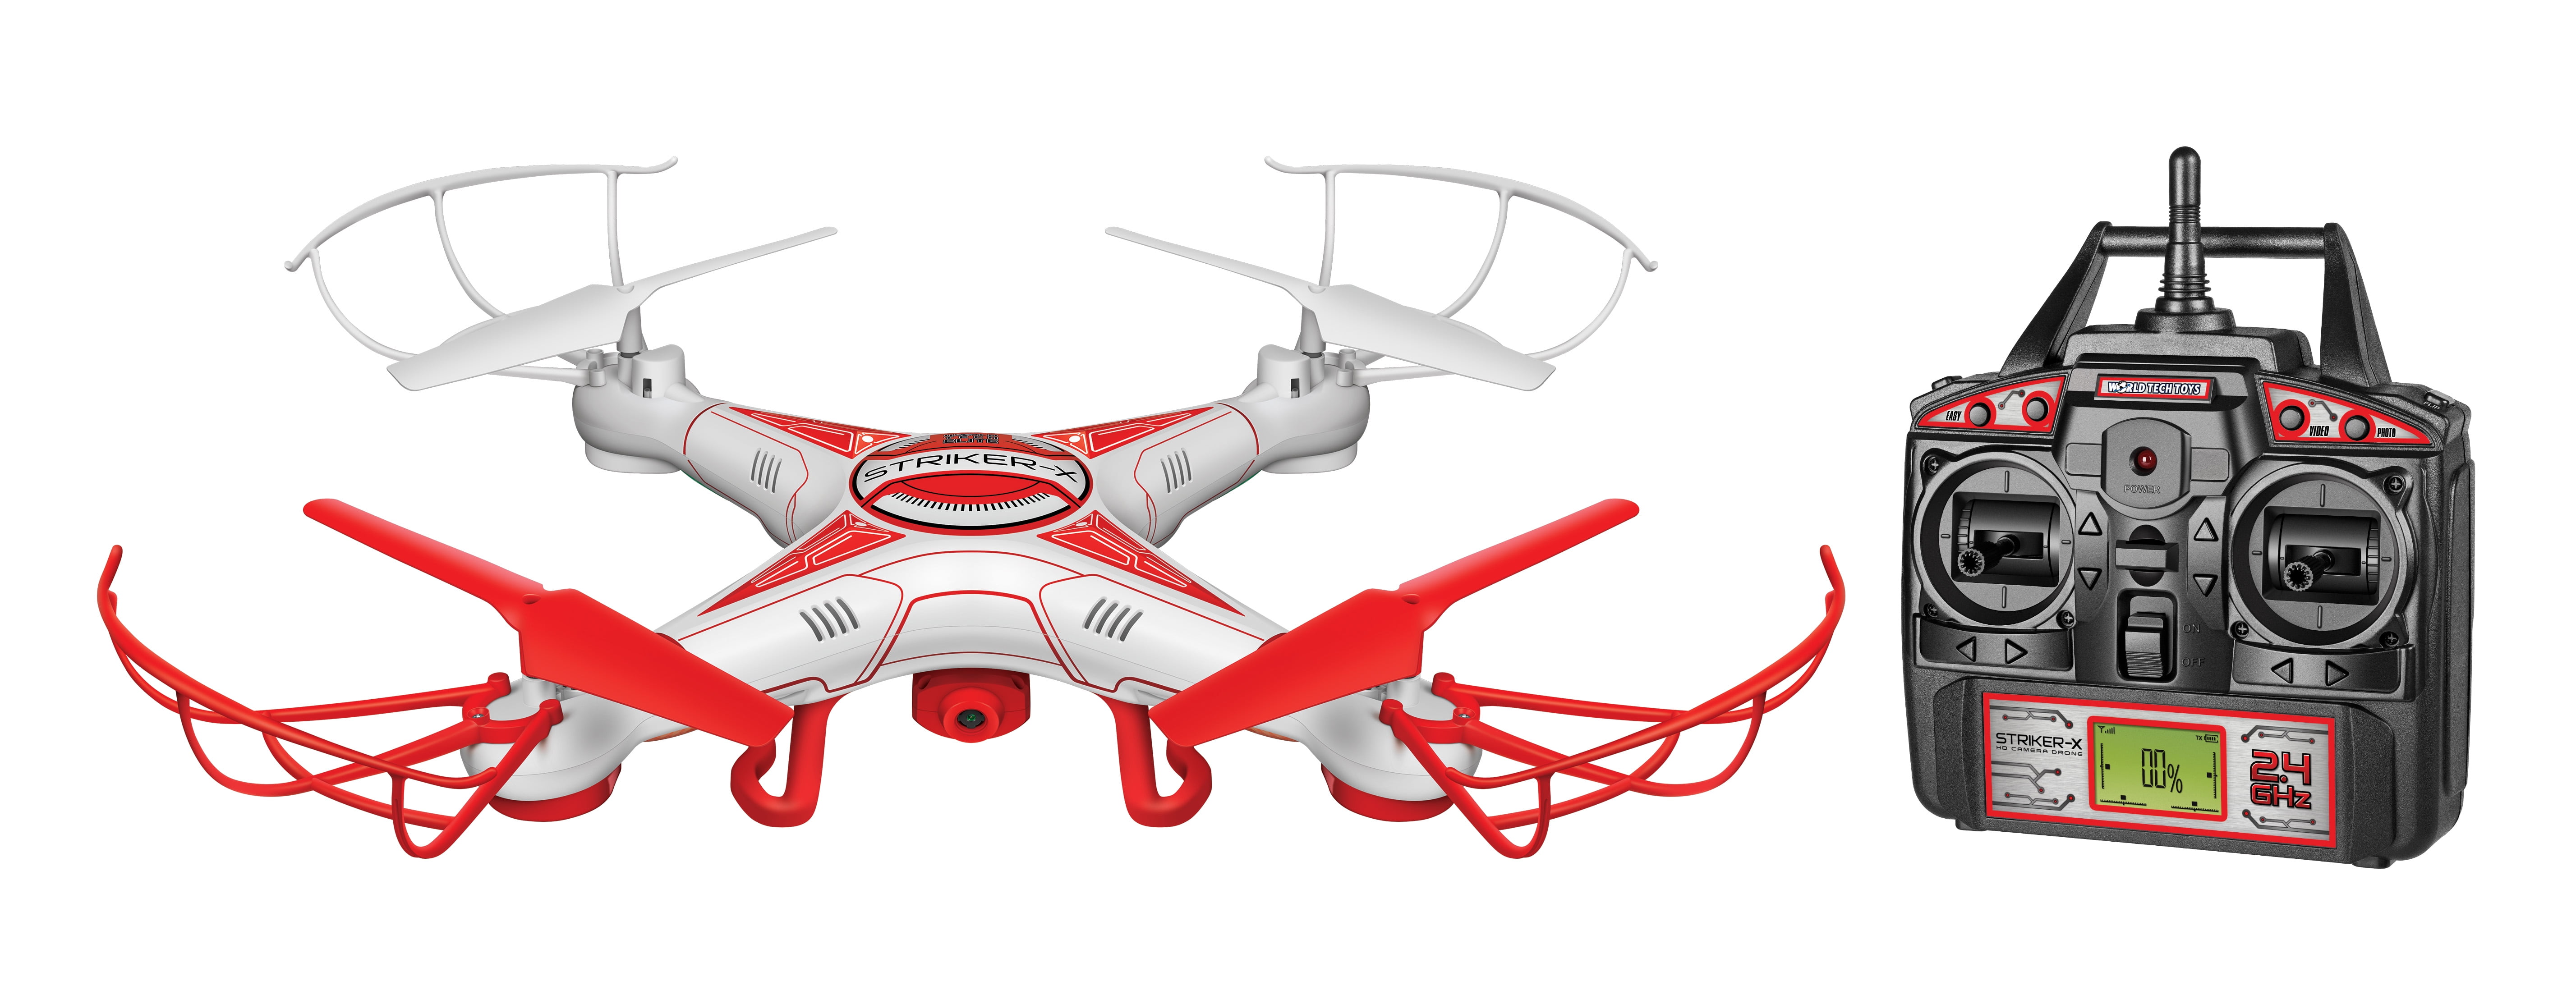 world tech elite striker x drone